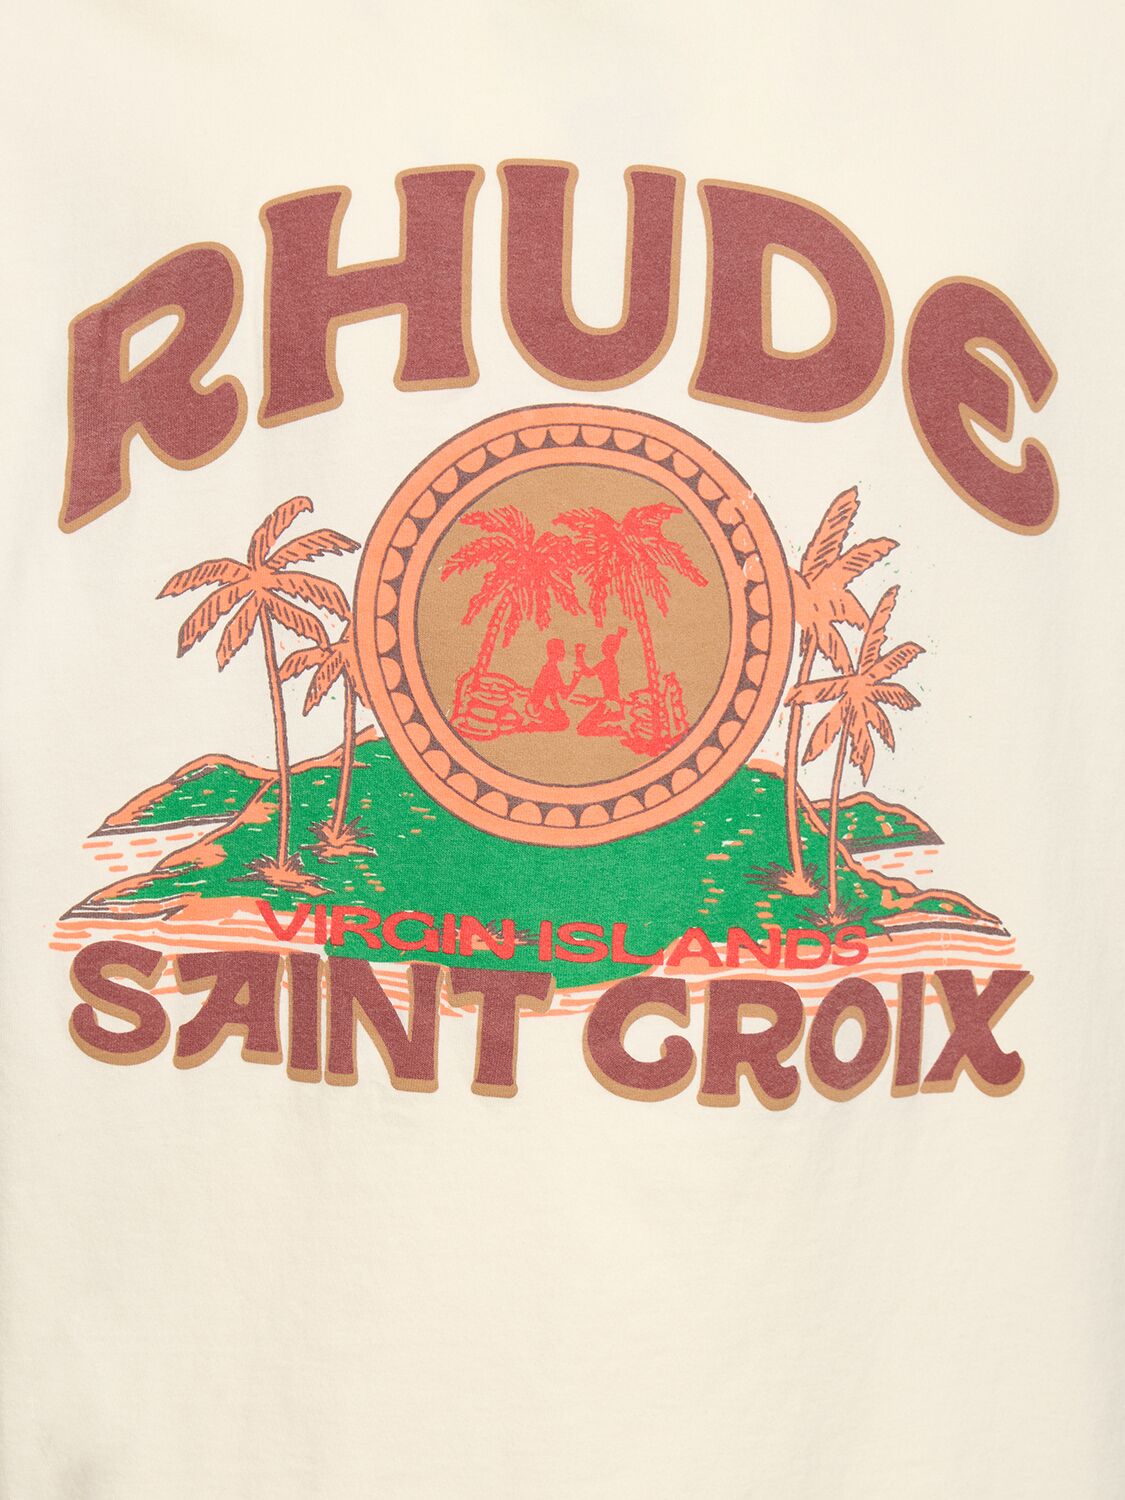 Shop Rhude Saint Croix Cotton T-shirt In Vintage White